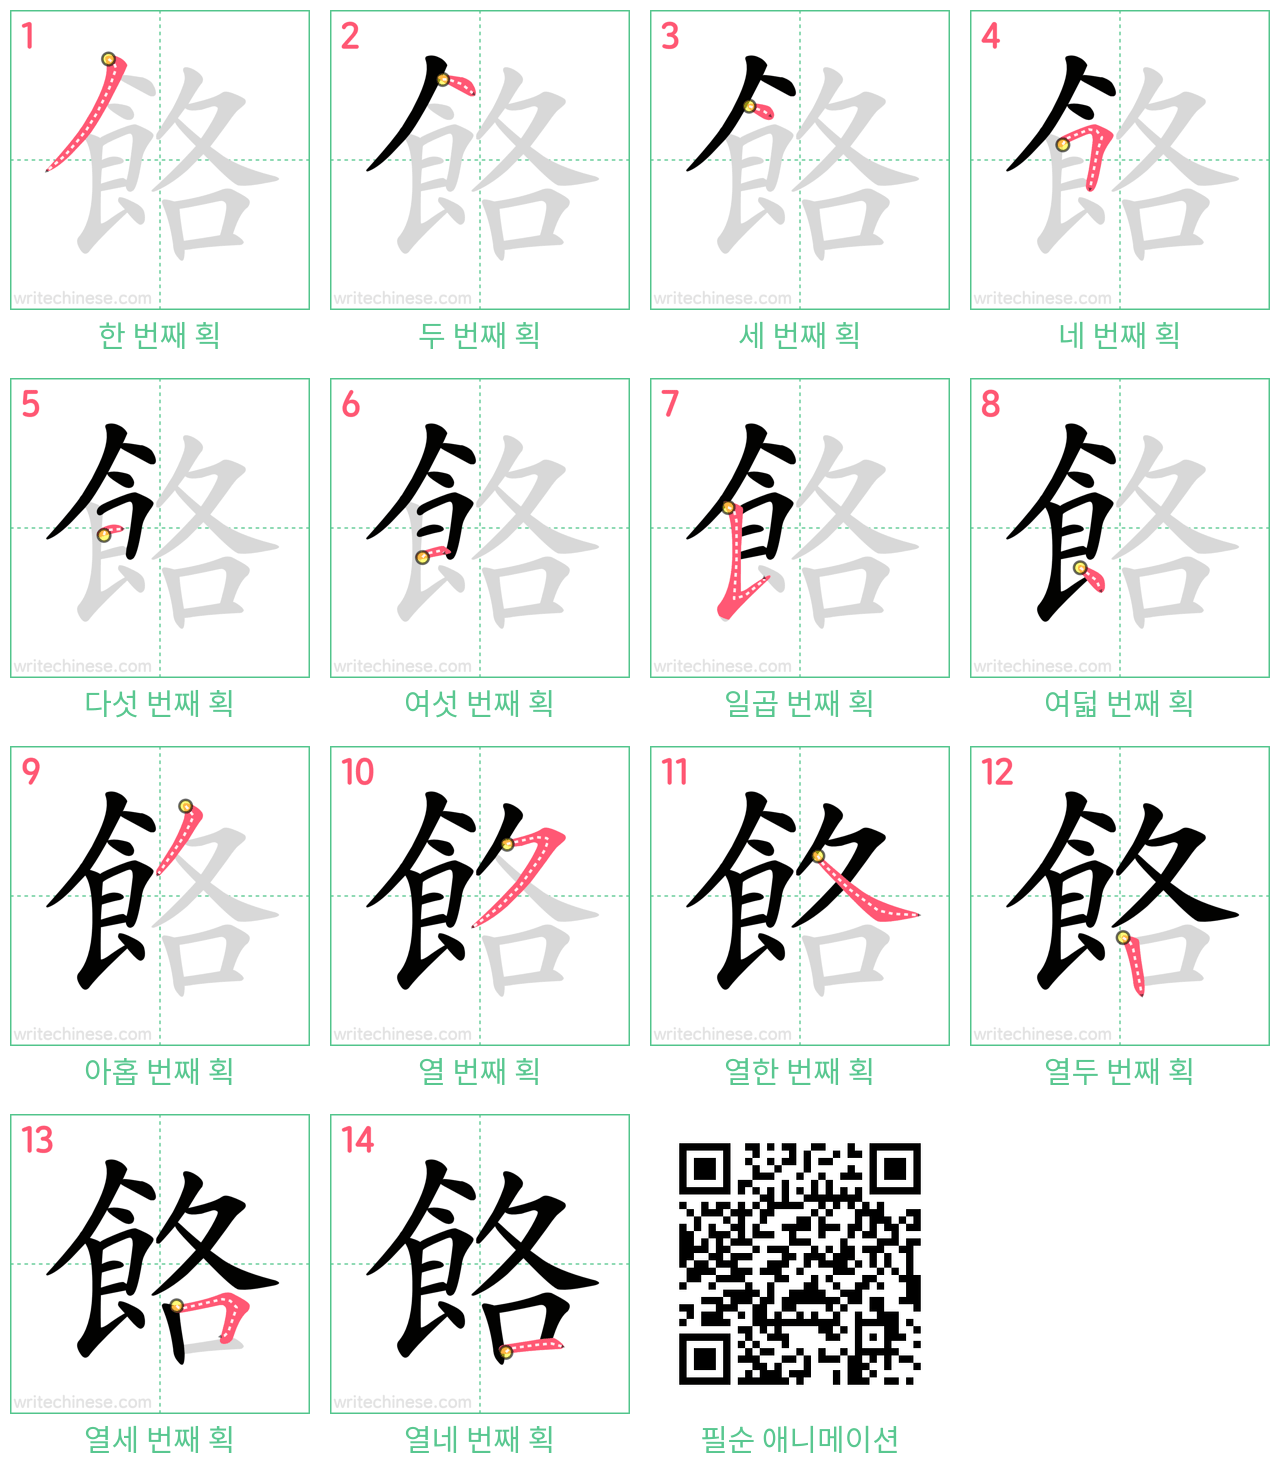 餎 step-by-step stroke order diagrams